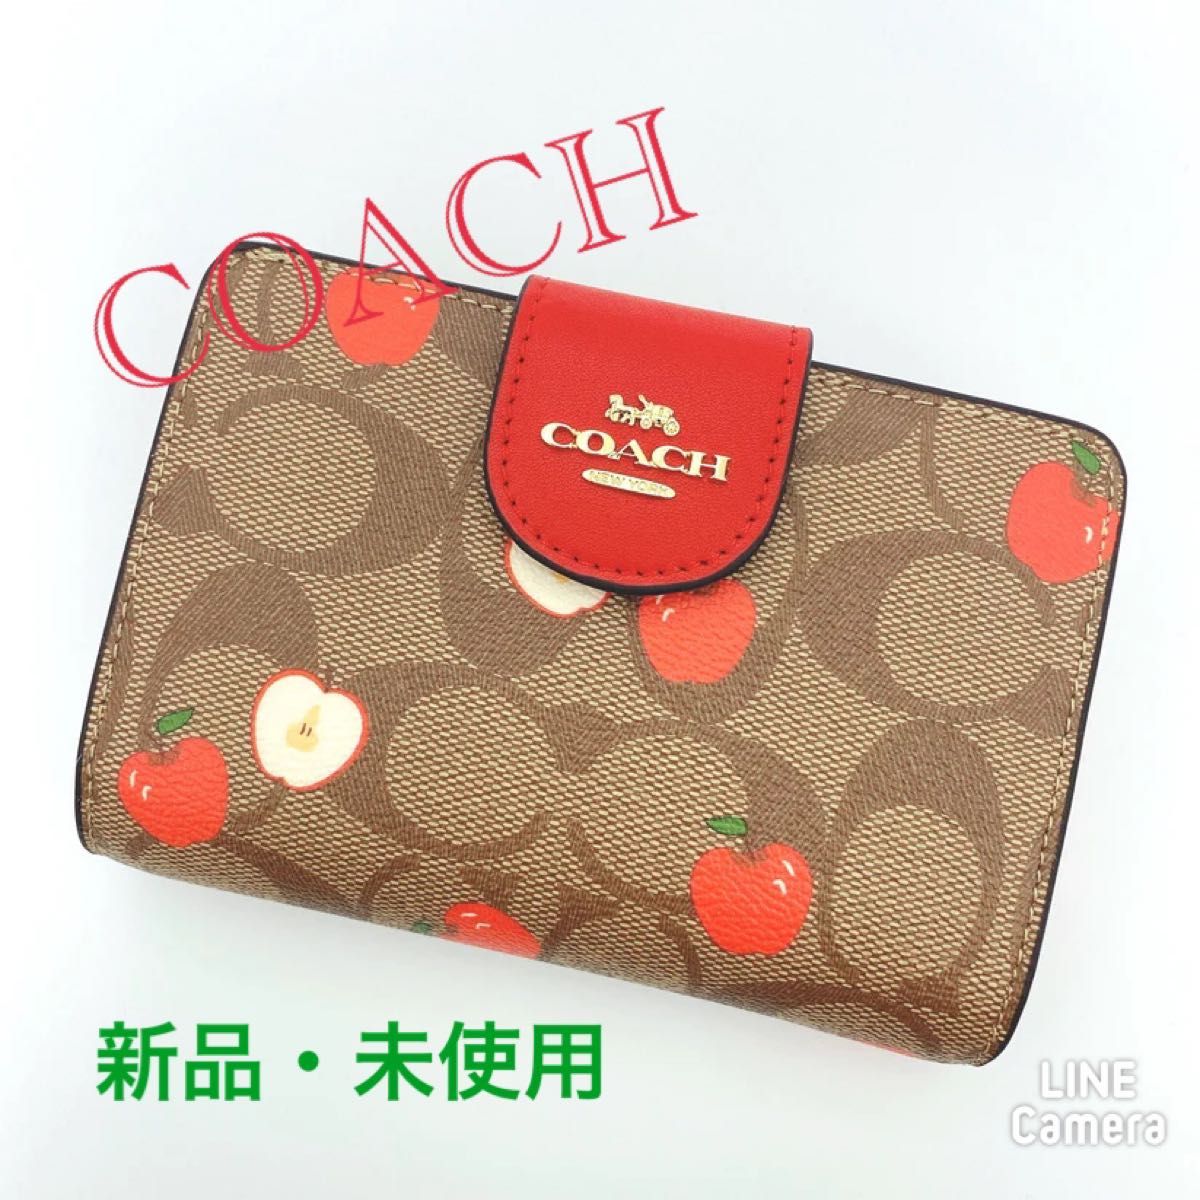 COACH 二つ折り財布 カーキ色 リンゴ柄 - レディースファッション